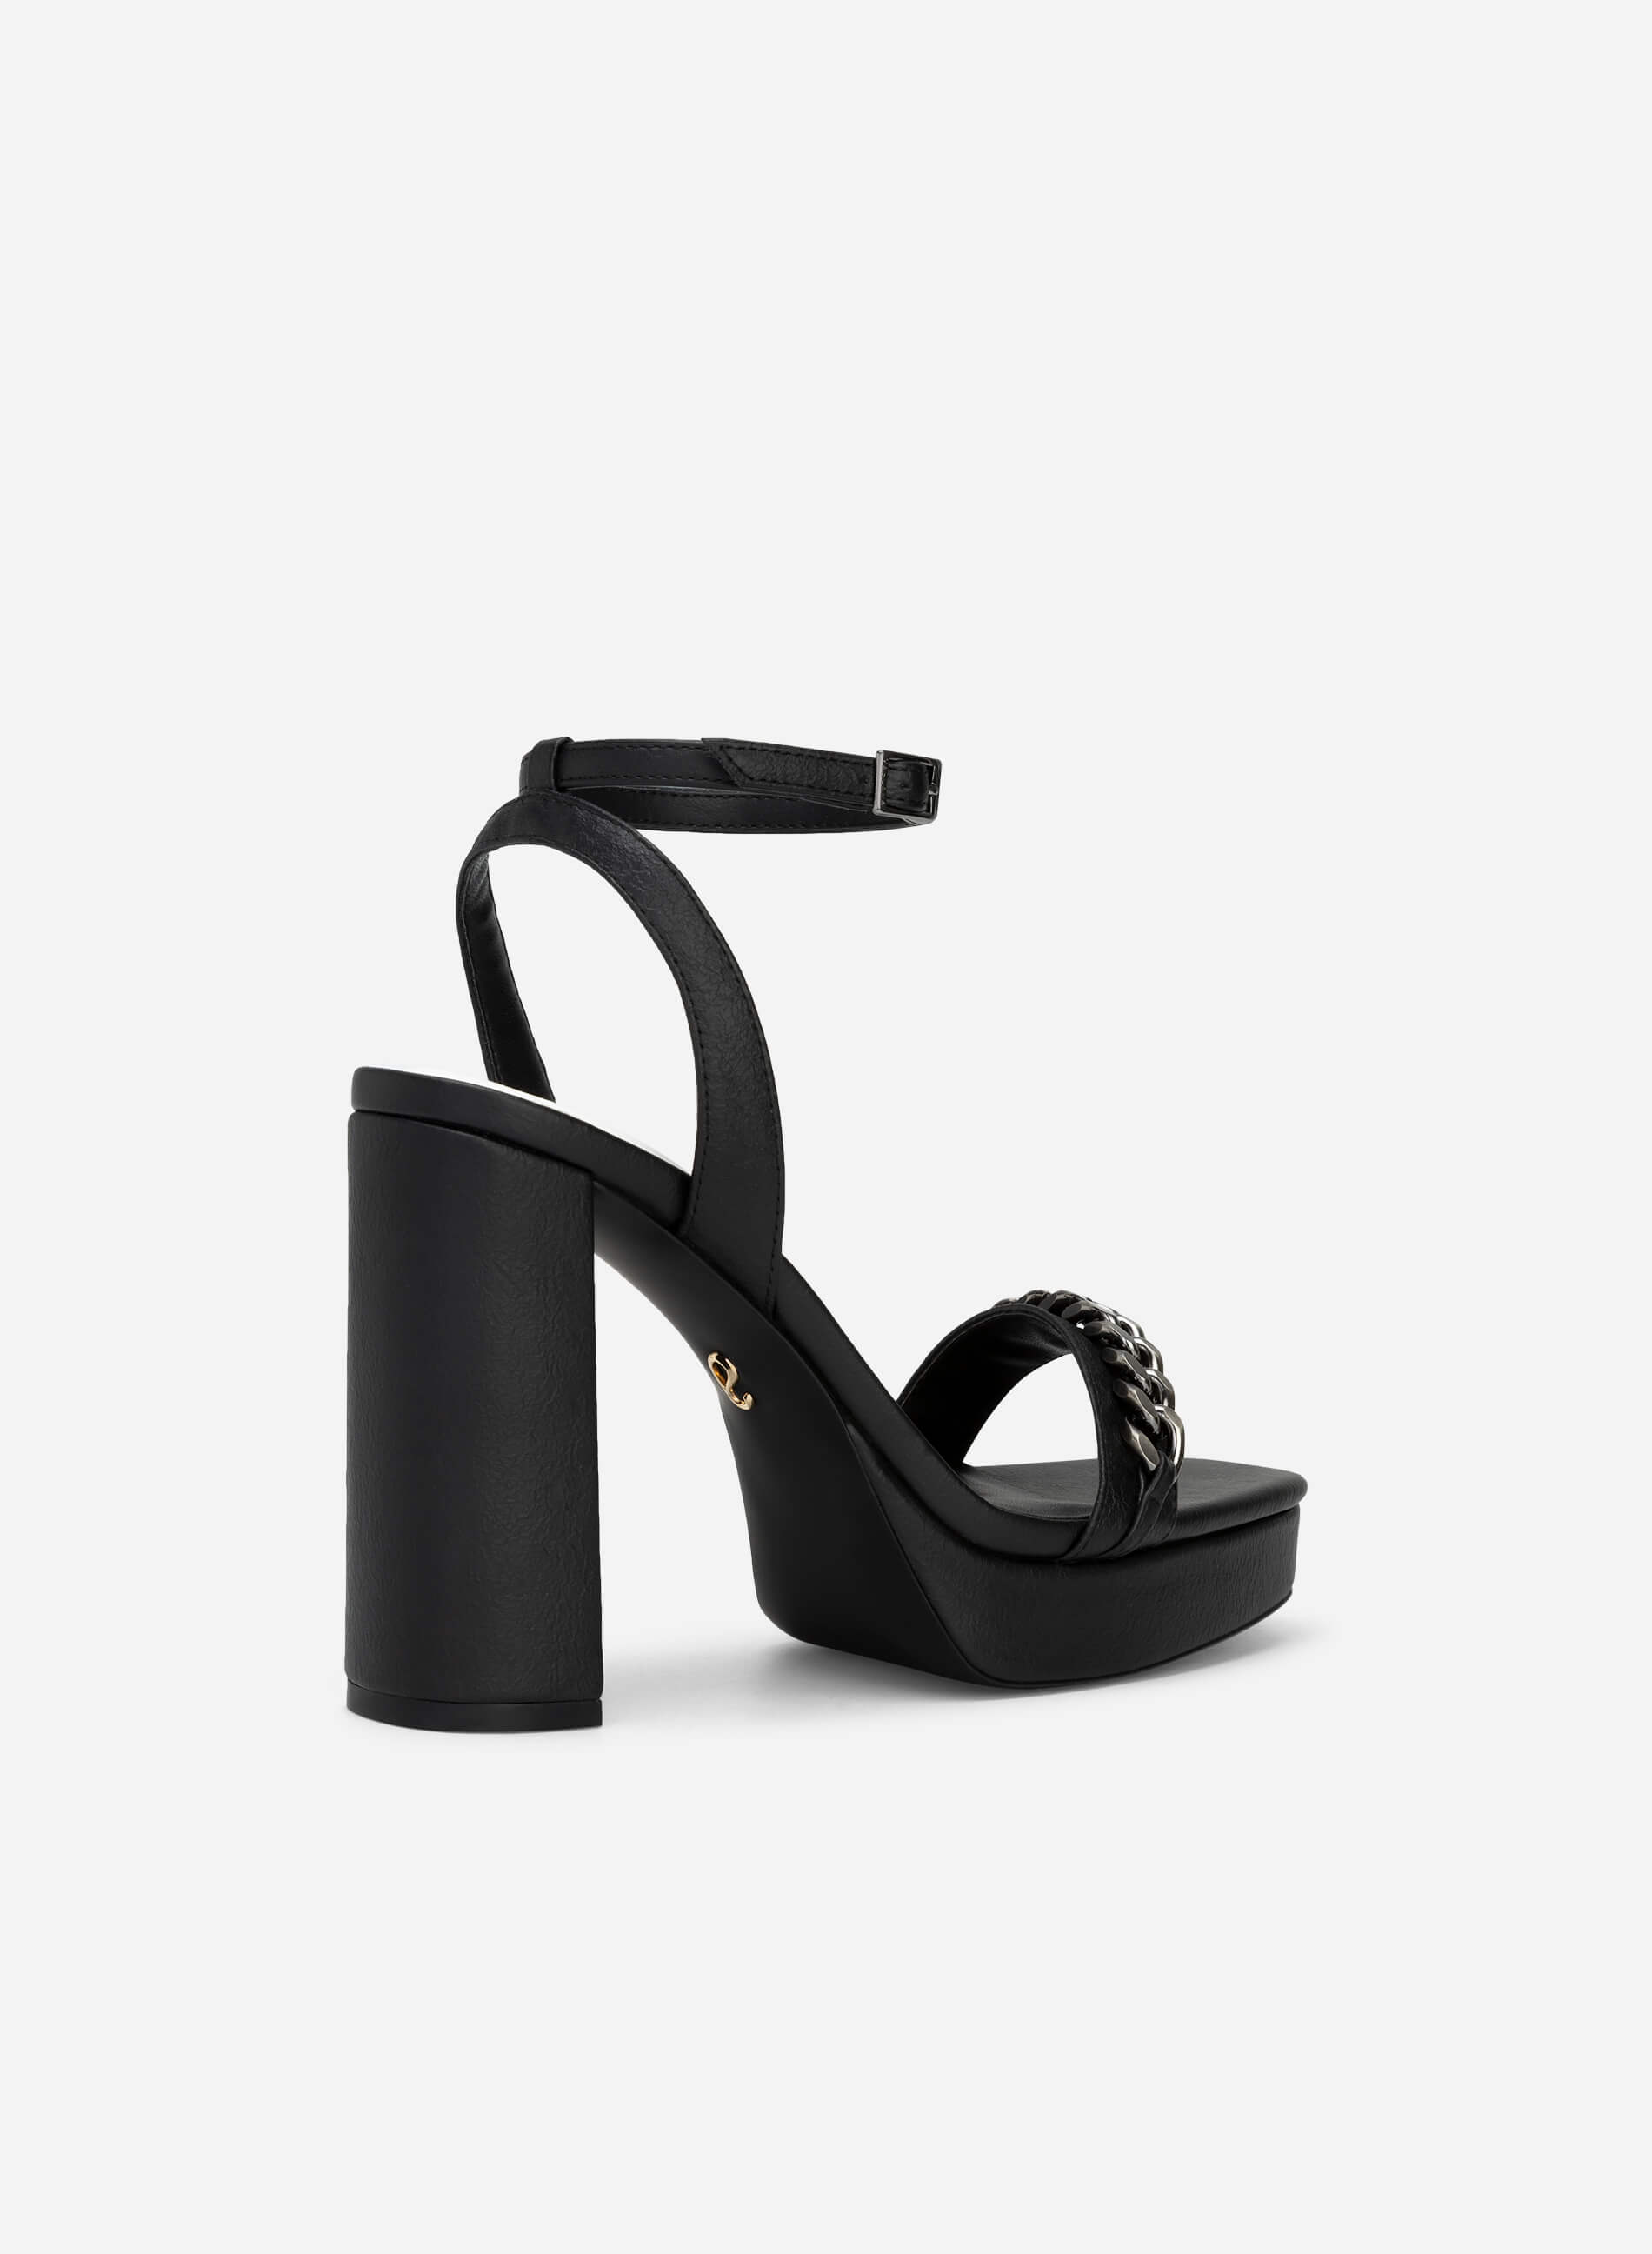 Chain Link Décor Ankle Strap Sandals - PUM 0732 - Black | VASCARA